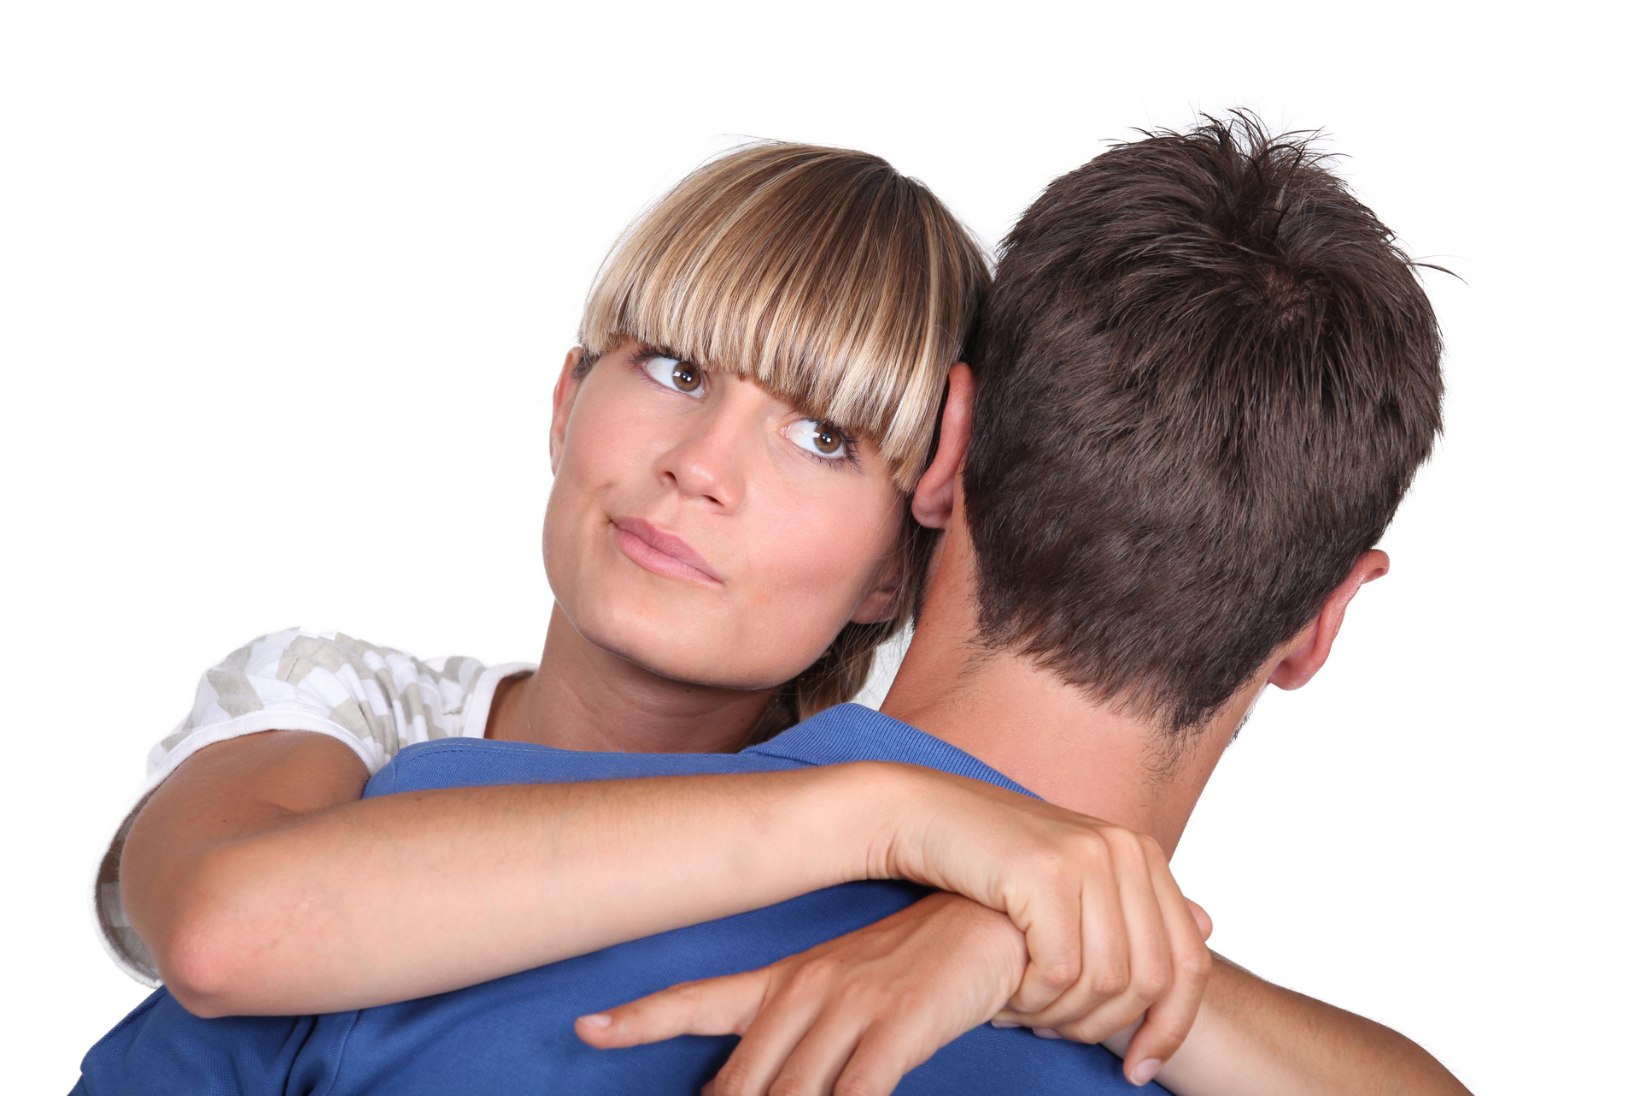 Teadlased: mida kindlam oled võimaliku partneri tunnetes, seda võluvam ta tundub!